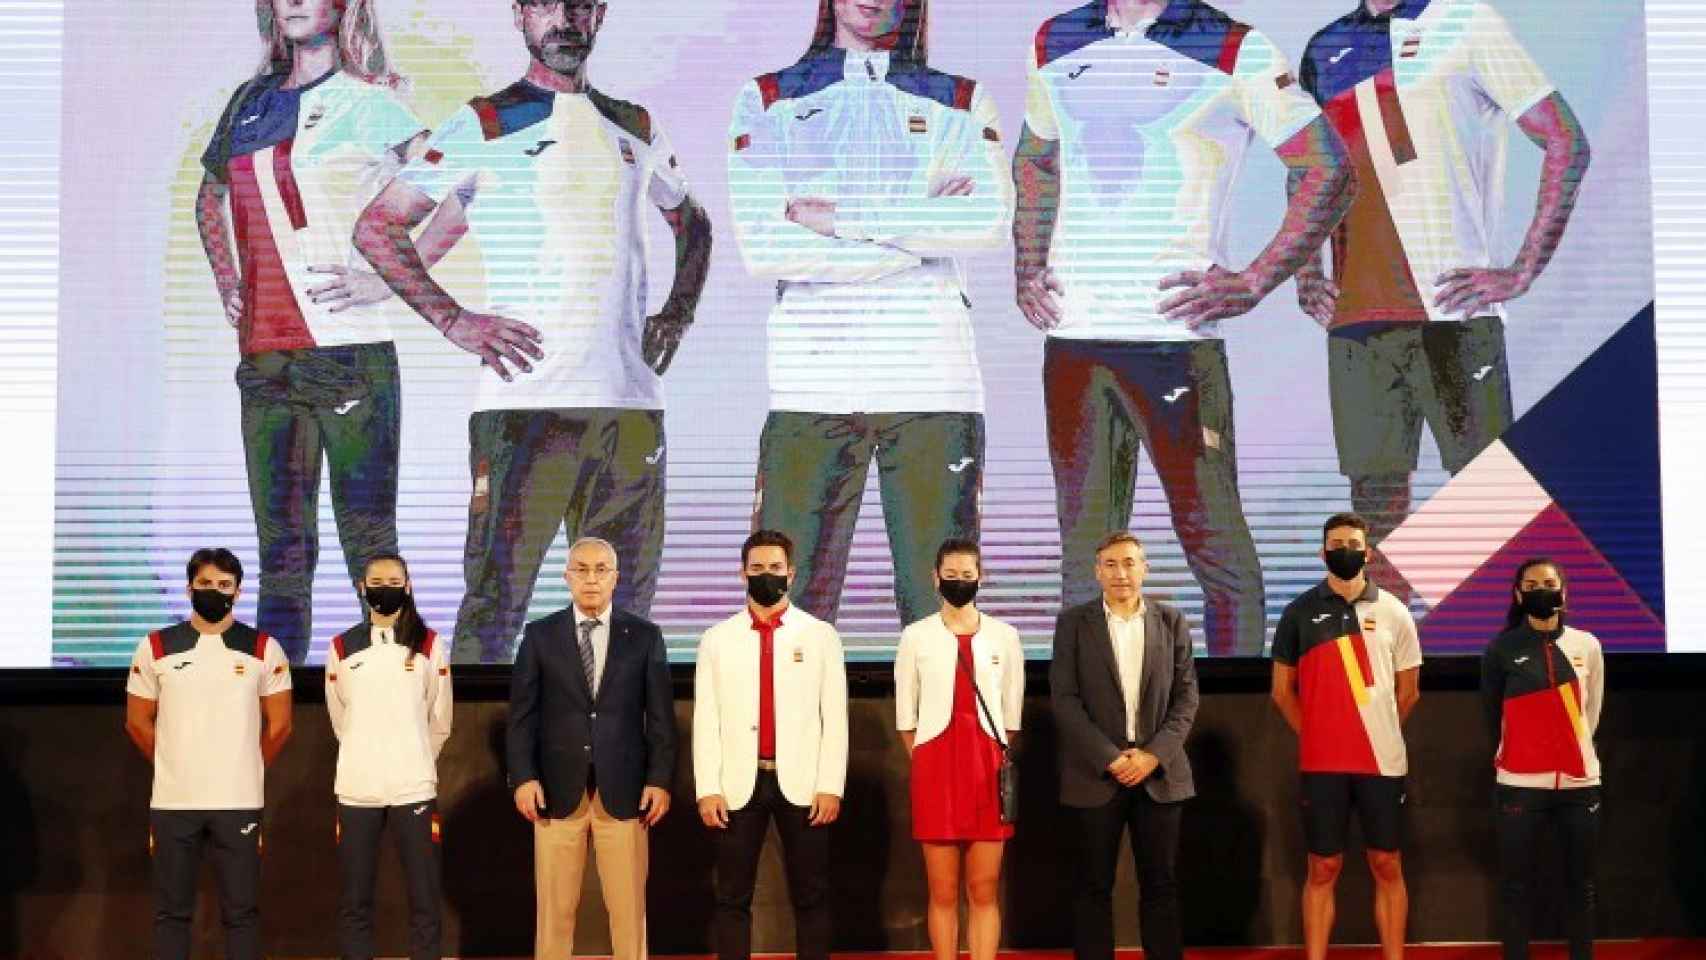 Así irán vestidos los deportistas de España en los Juegos Olímpicos de Tokio 2020